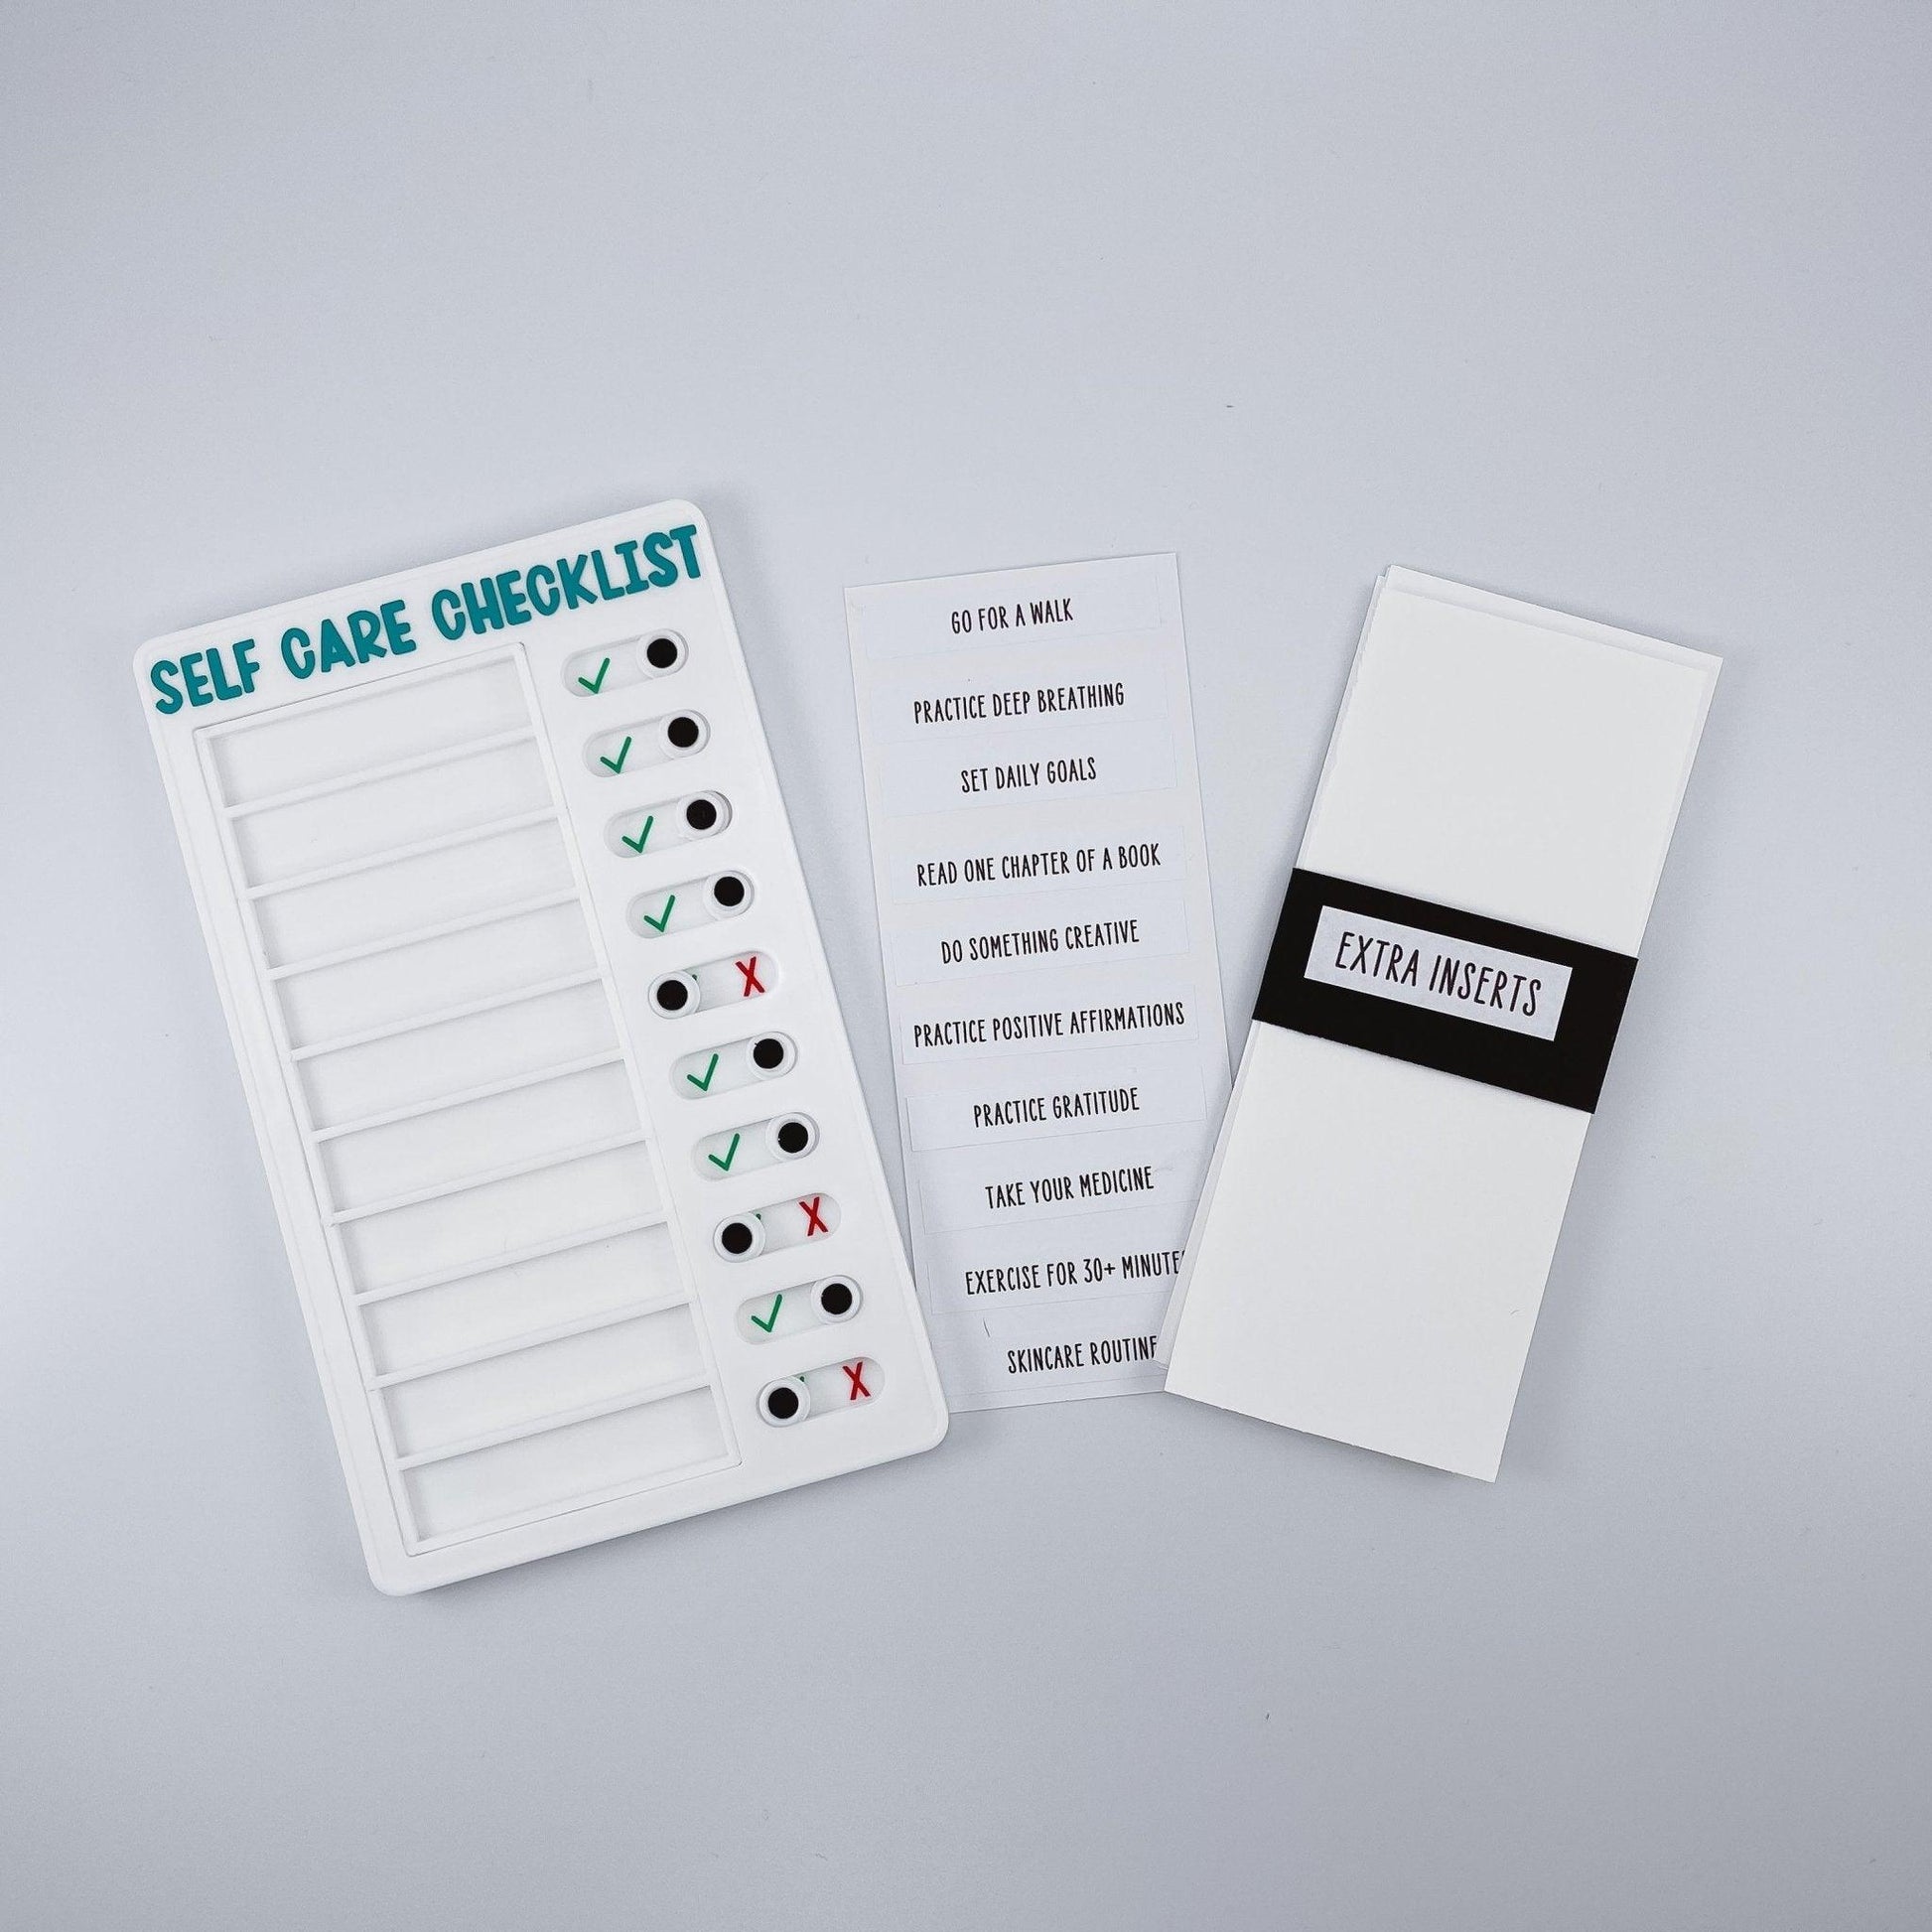 Self Care Checklist - Sunshine Soul MD